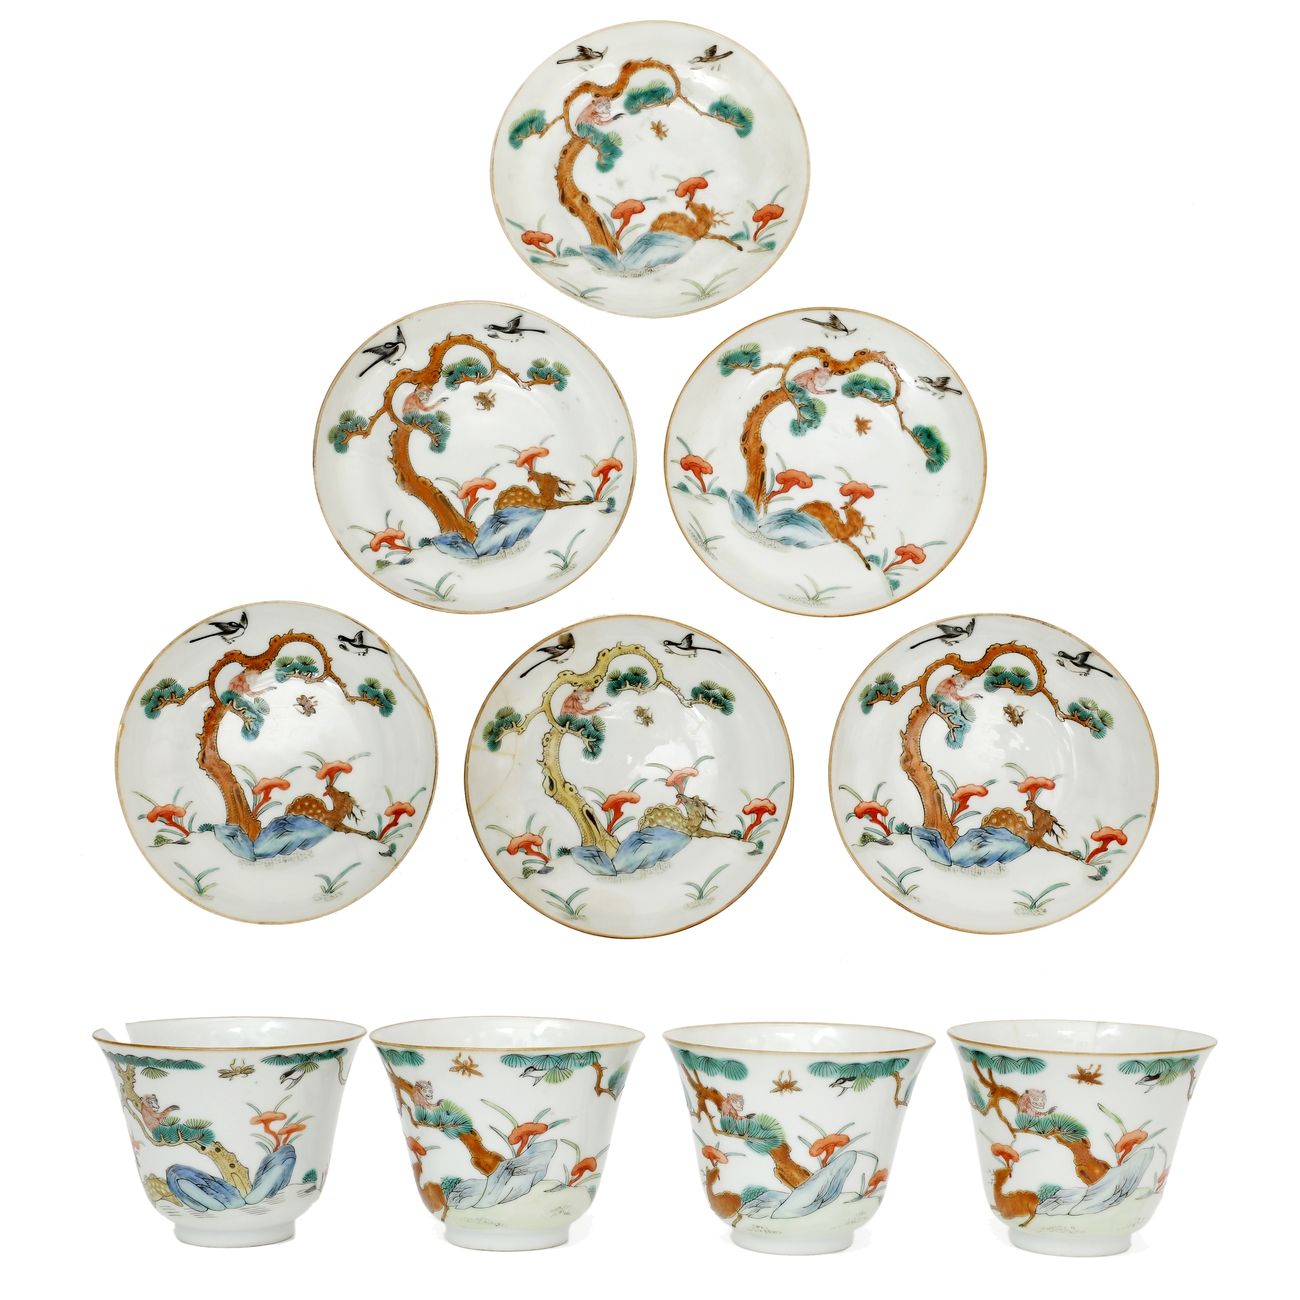 Null China circa 1900
Juego de cuatro grandes cuencos de porcelana y seis platil&hellip;